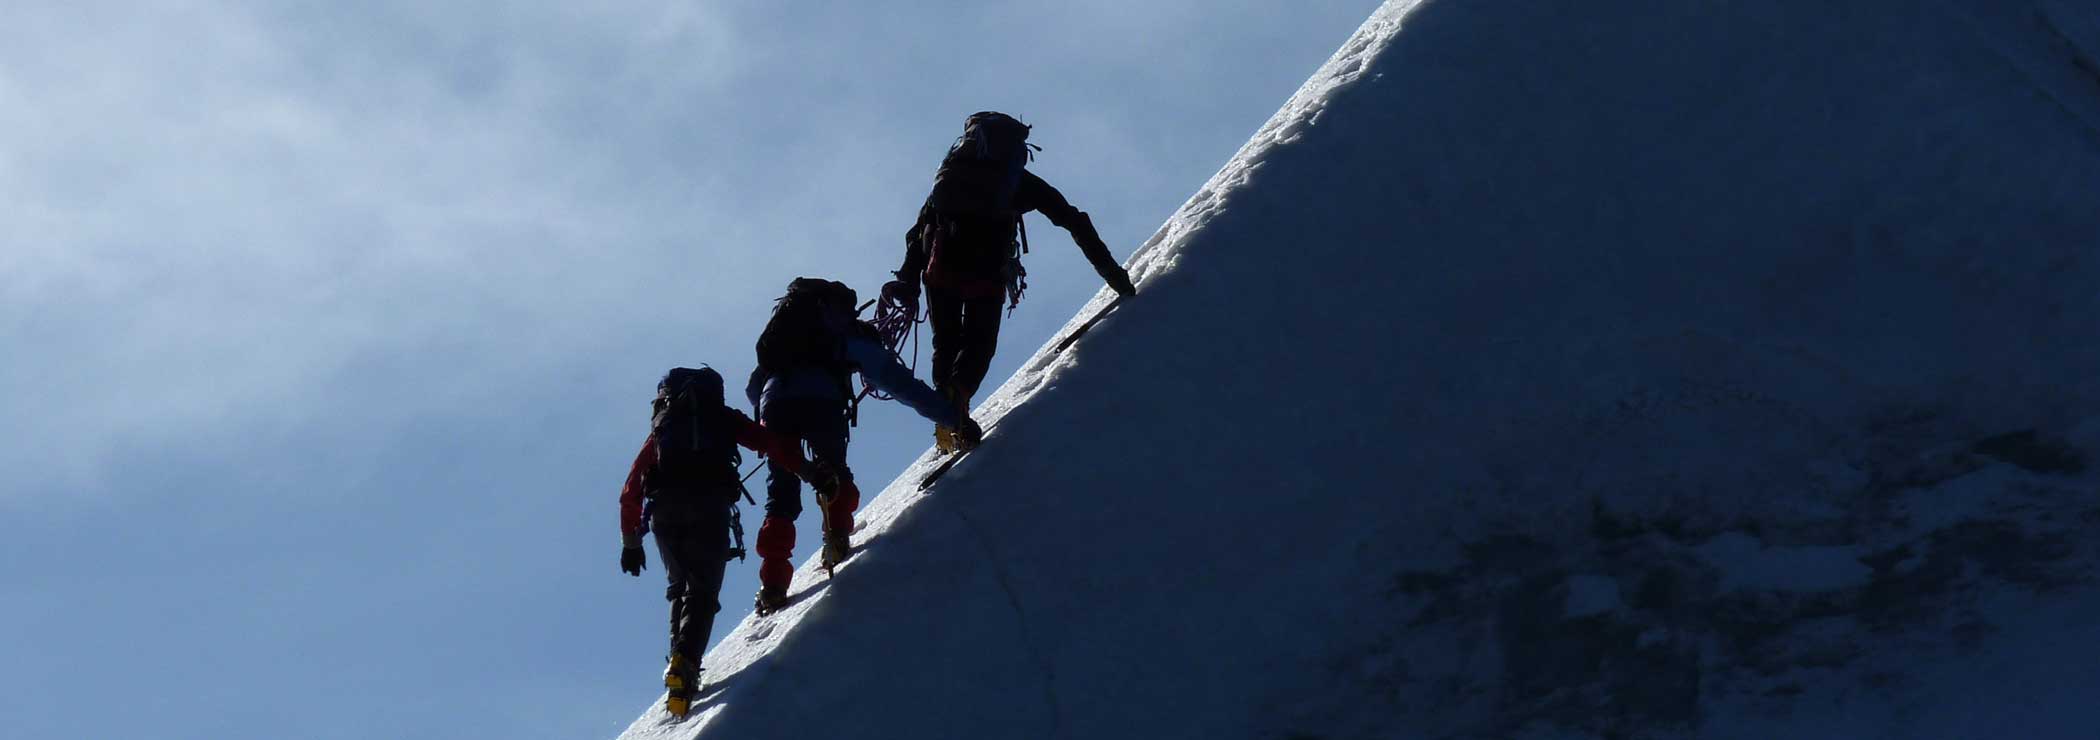 Drei Bergsteiger am kurzen Seil